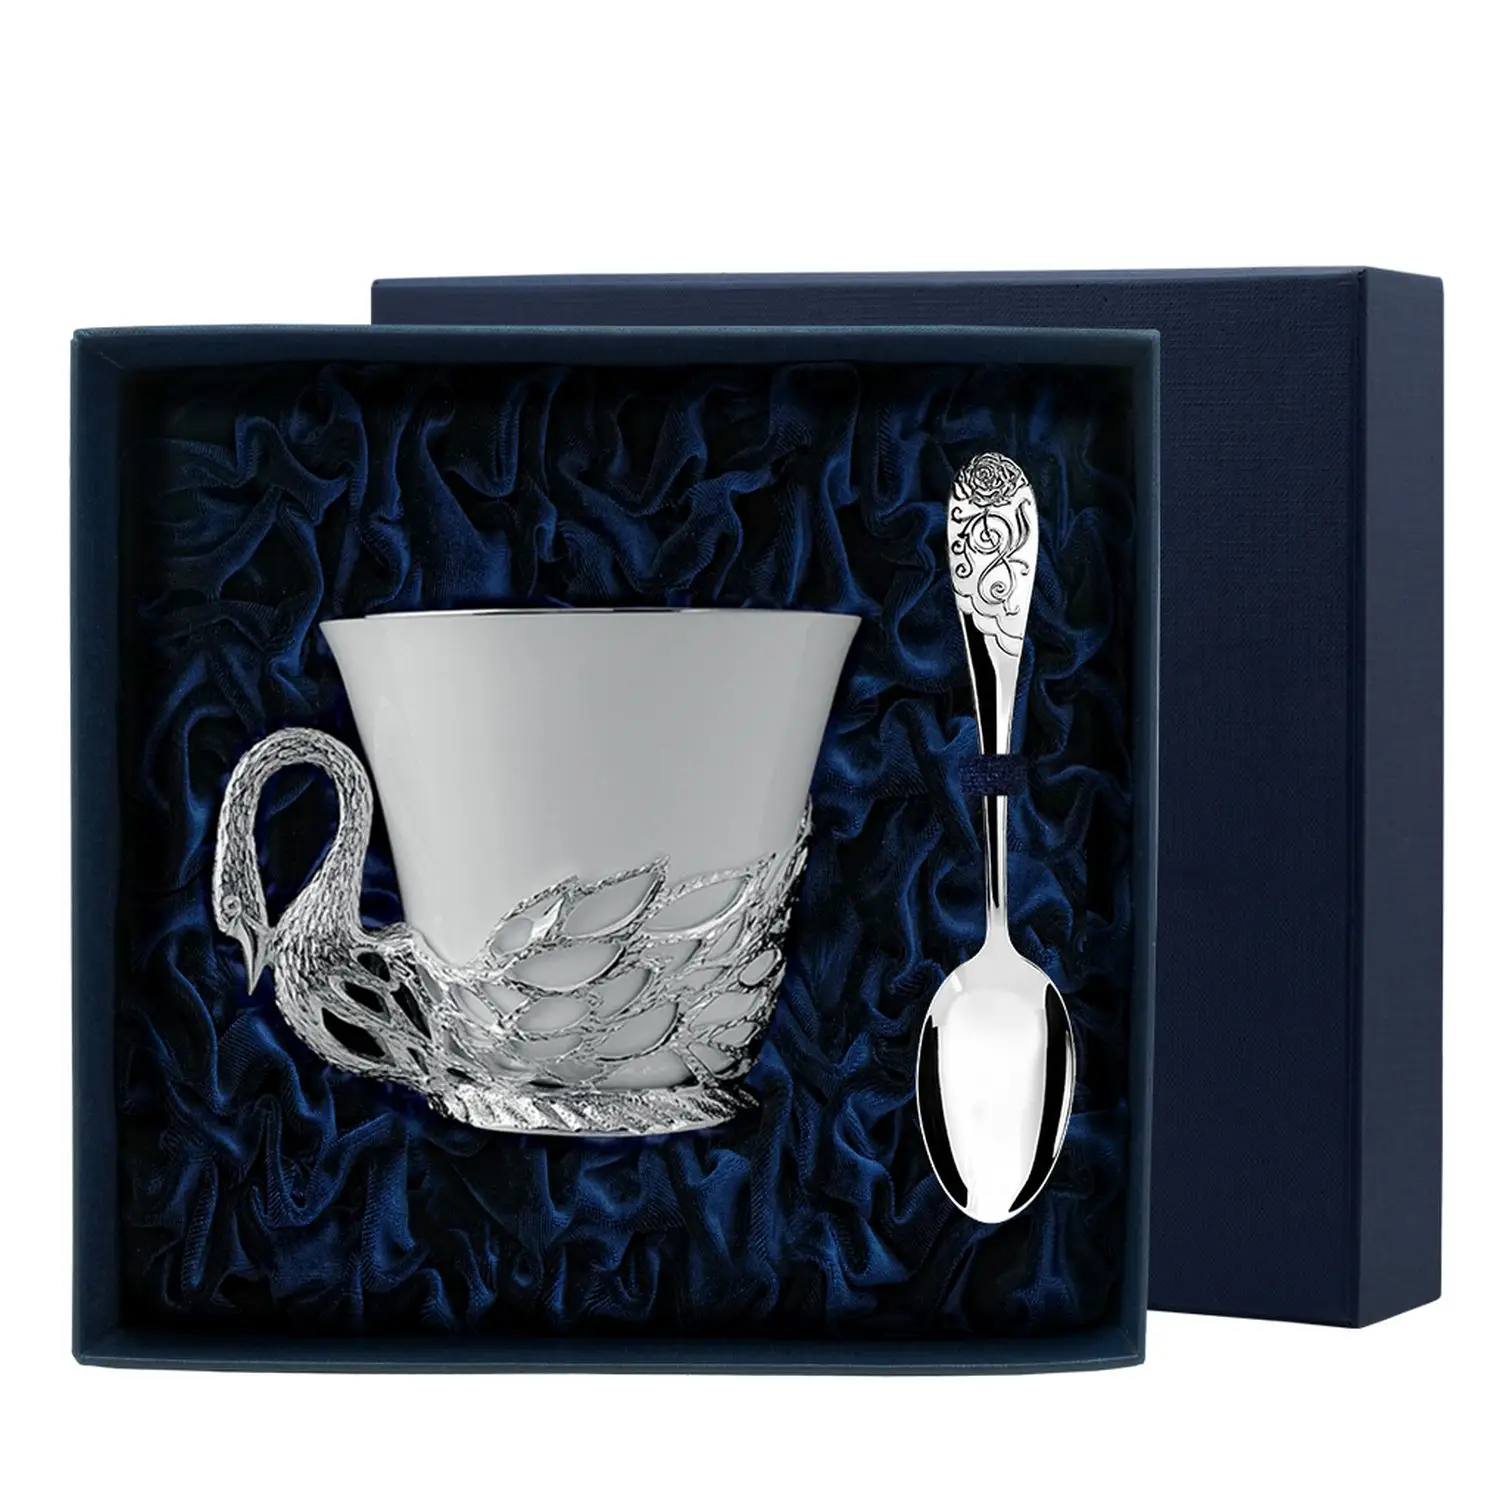 Набор чайная чашка Лебедь: ложка, чашка (Серебро 925) набор чайная чашка дятел ложка чашка серебро 925